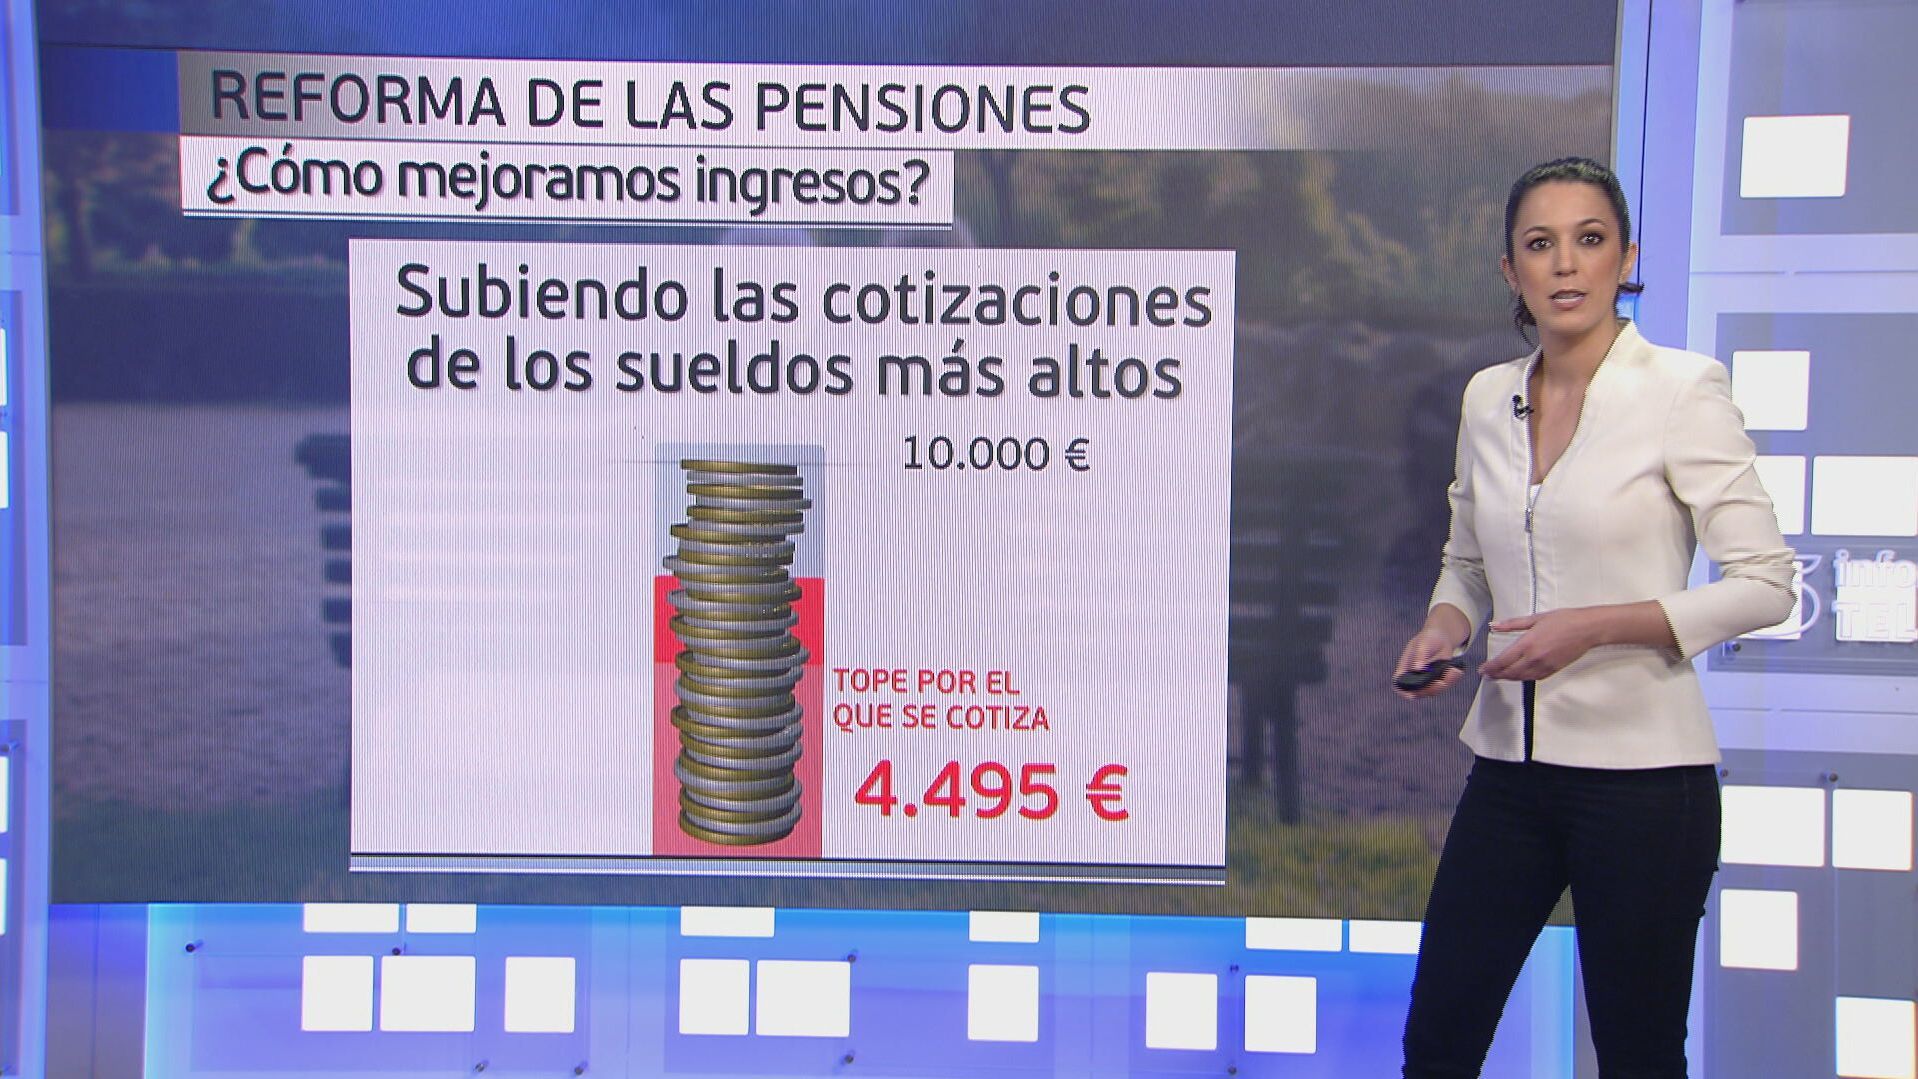 El panel de Beatriz Benayas: ¿por qué ahora la reforma de las pensiones y cúando entra en vigor?